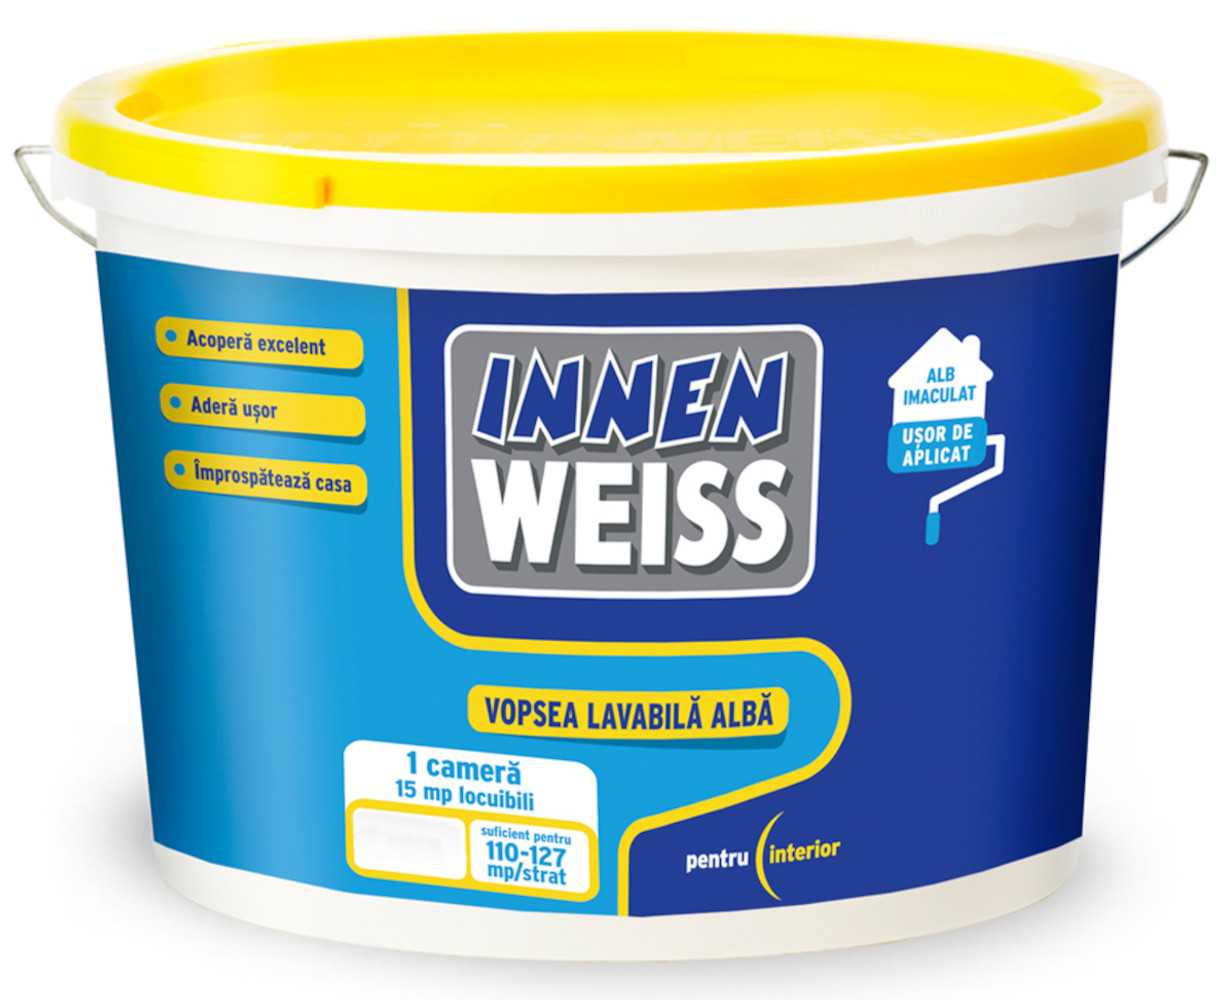 Vopsea lavabila alba interior, Innenweiss, 8.5 L